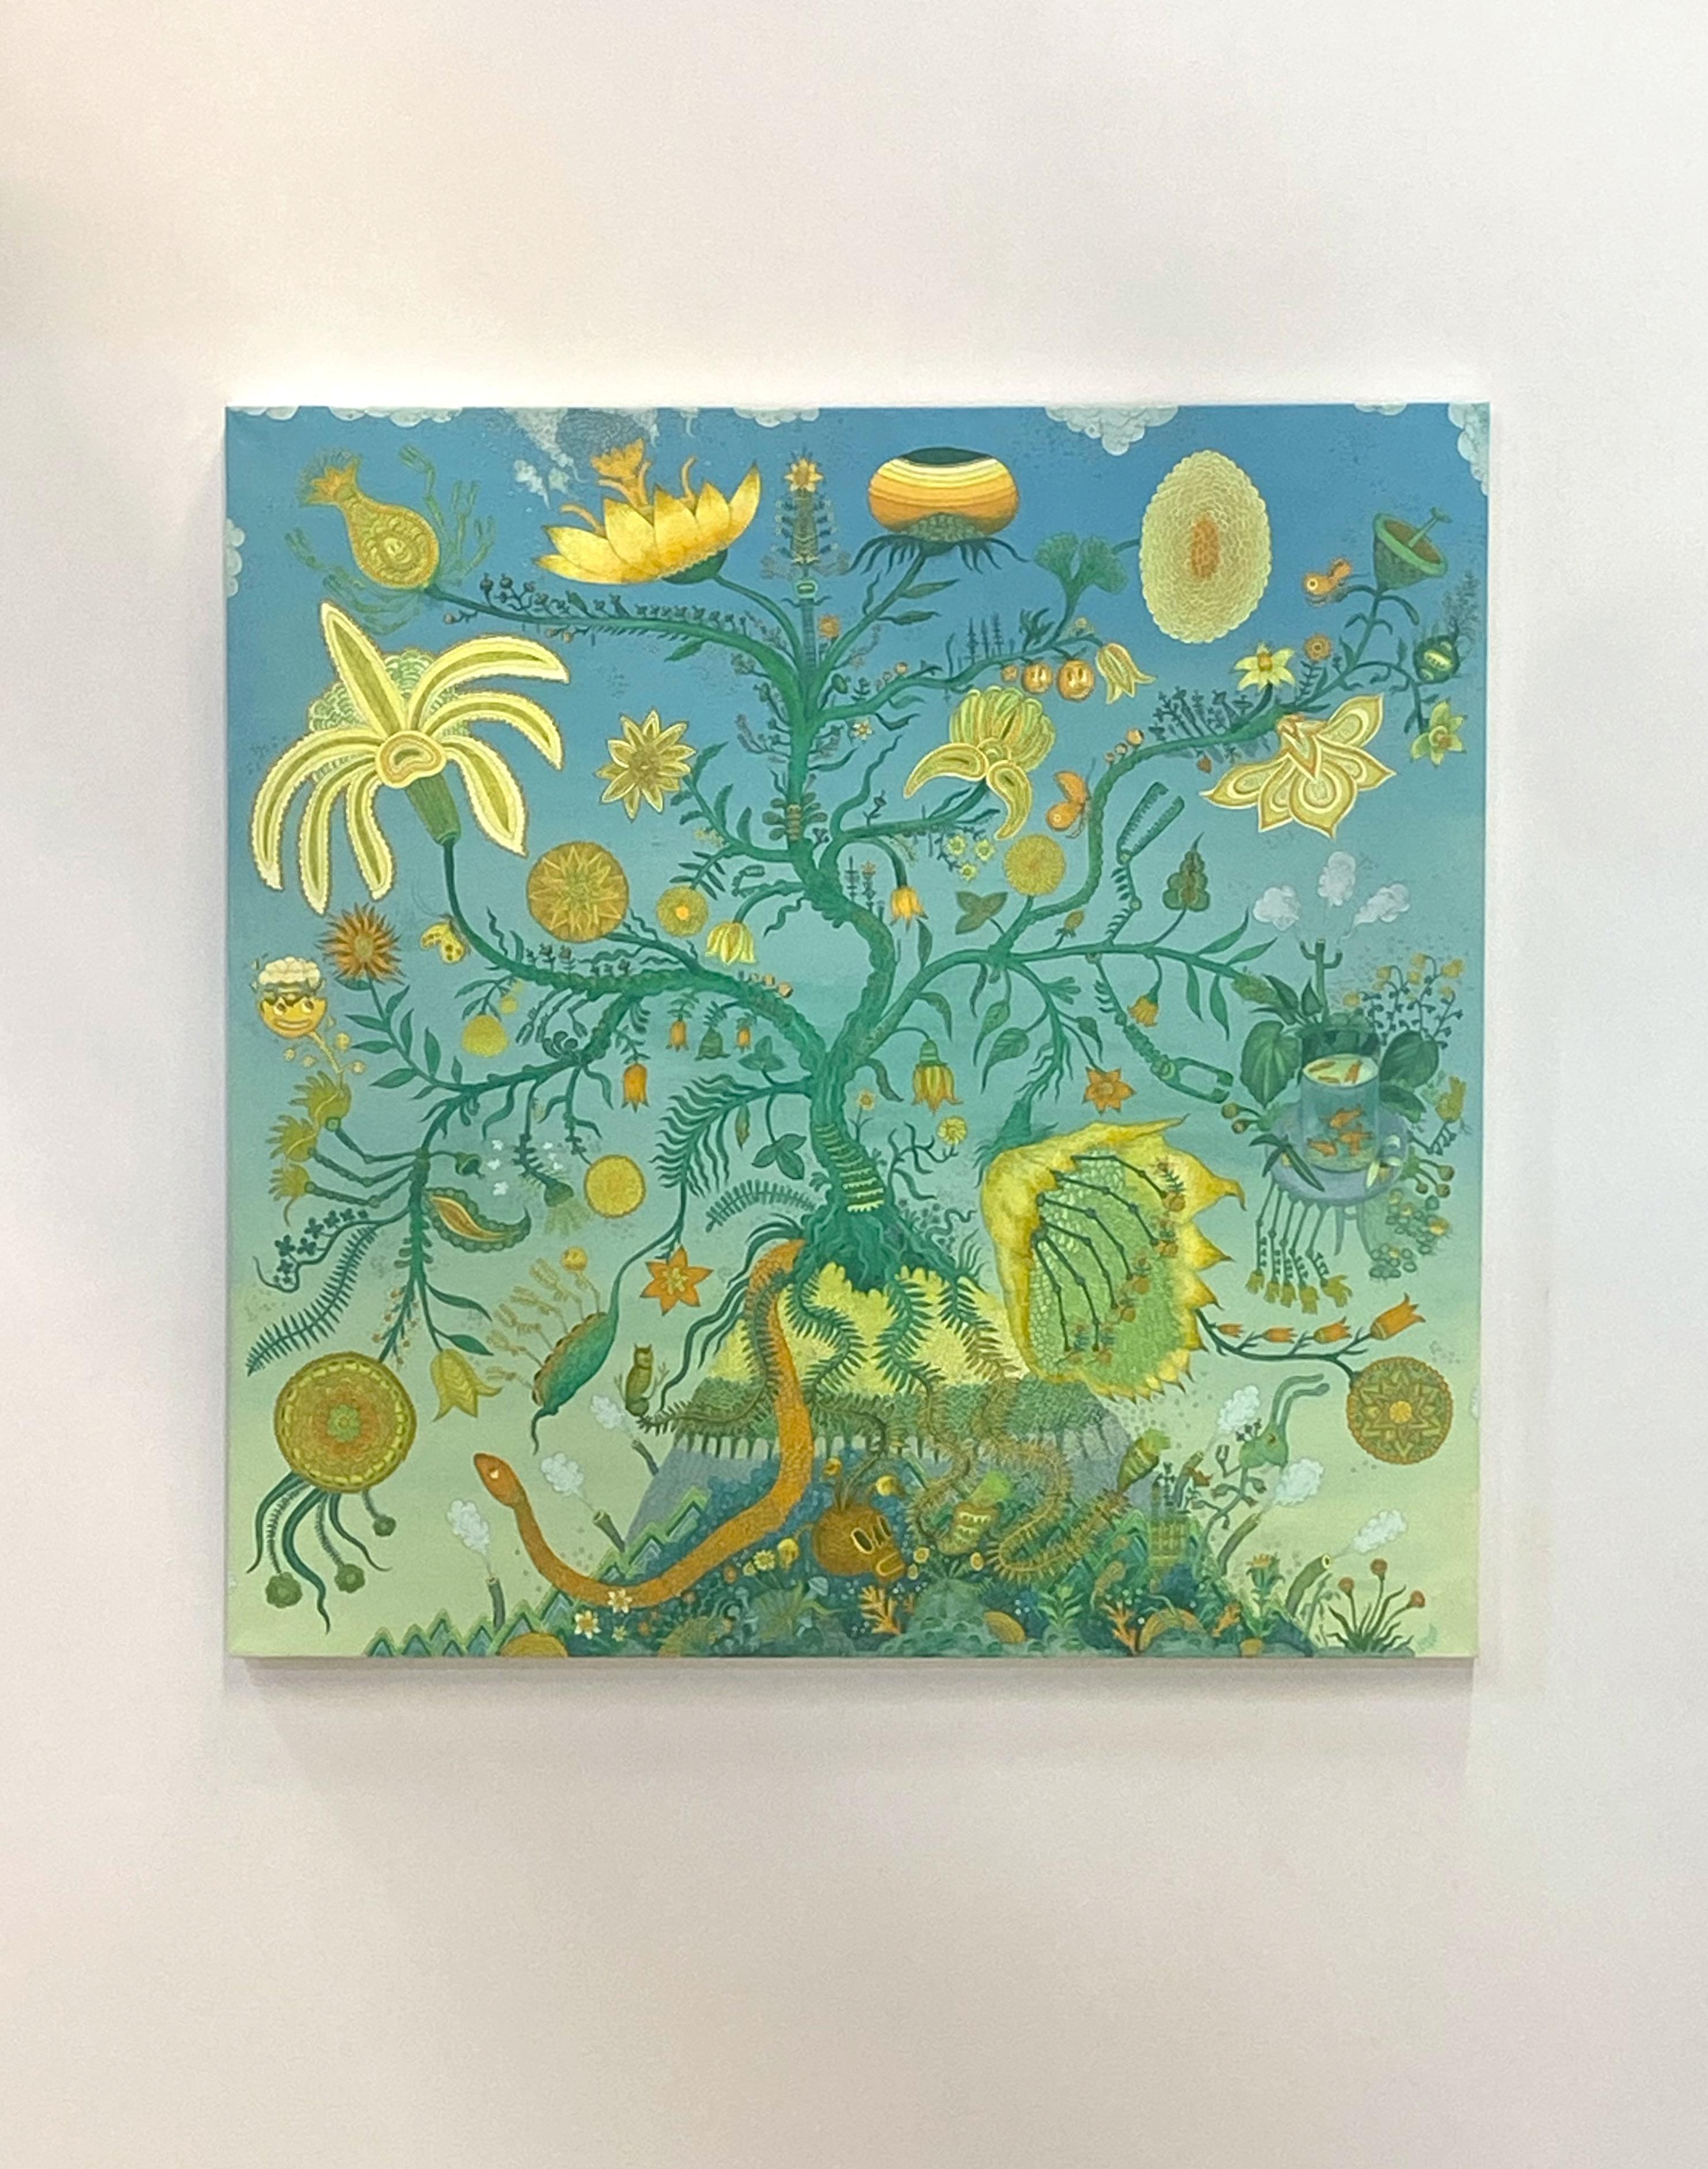 Baum des Lebens, Blau Grün Gelb Orange Futuristische botanische Landschaft, Tiere – Painting von Peter Hamlin